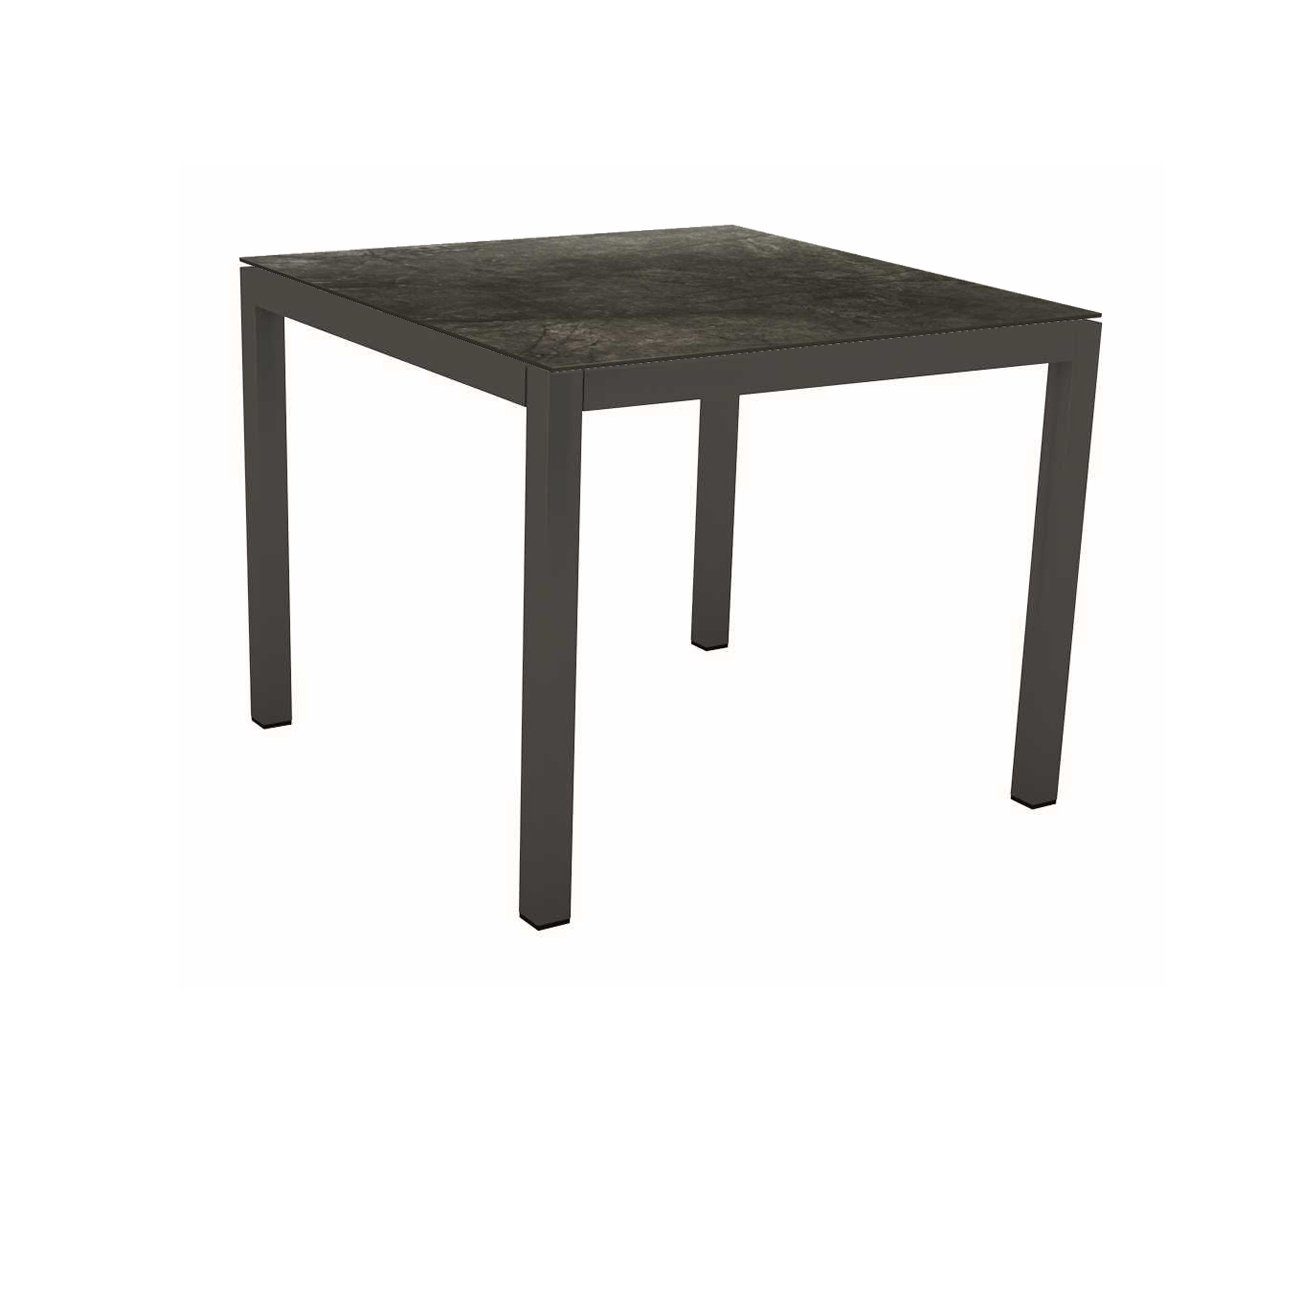 Stern Tischsystem Gartentisch, Gestell Aluminium anthrazit, Tischplatte HPL Dark Marble, Maße: 80x80 cm